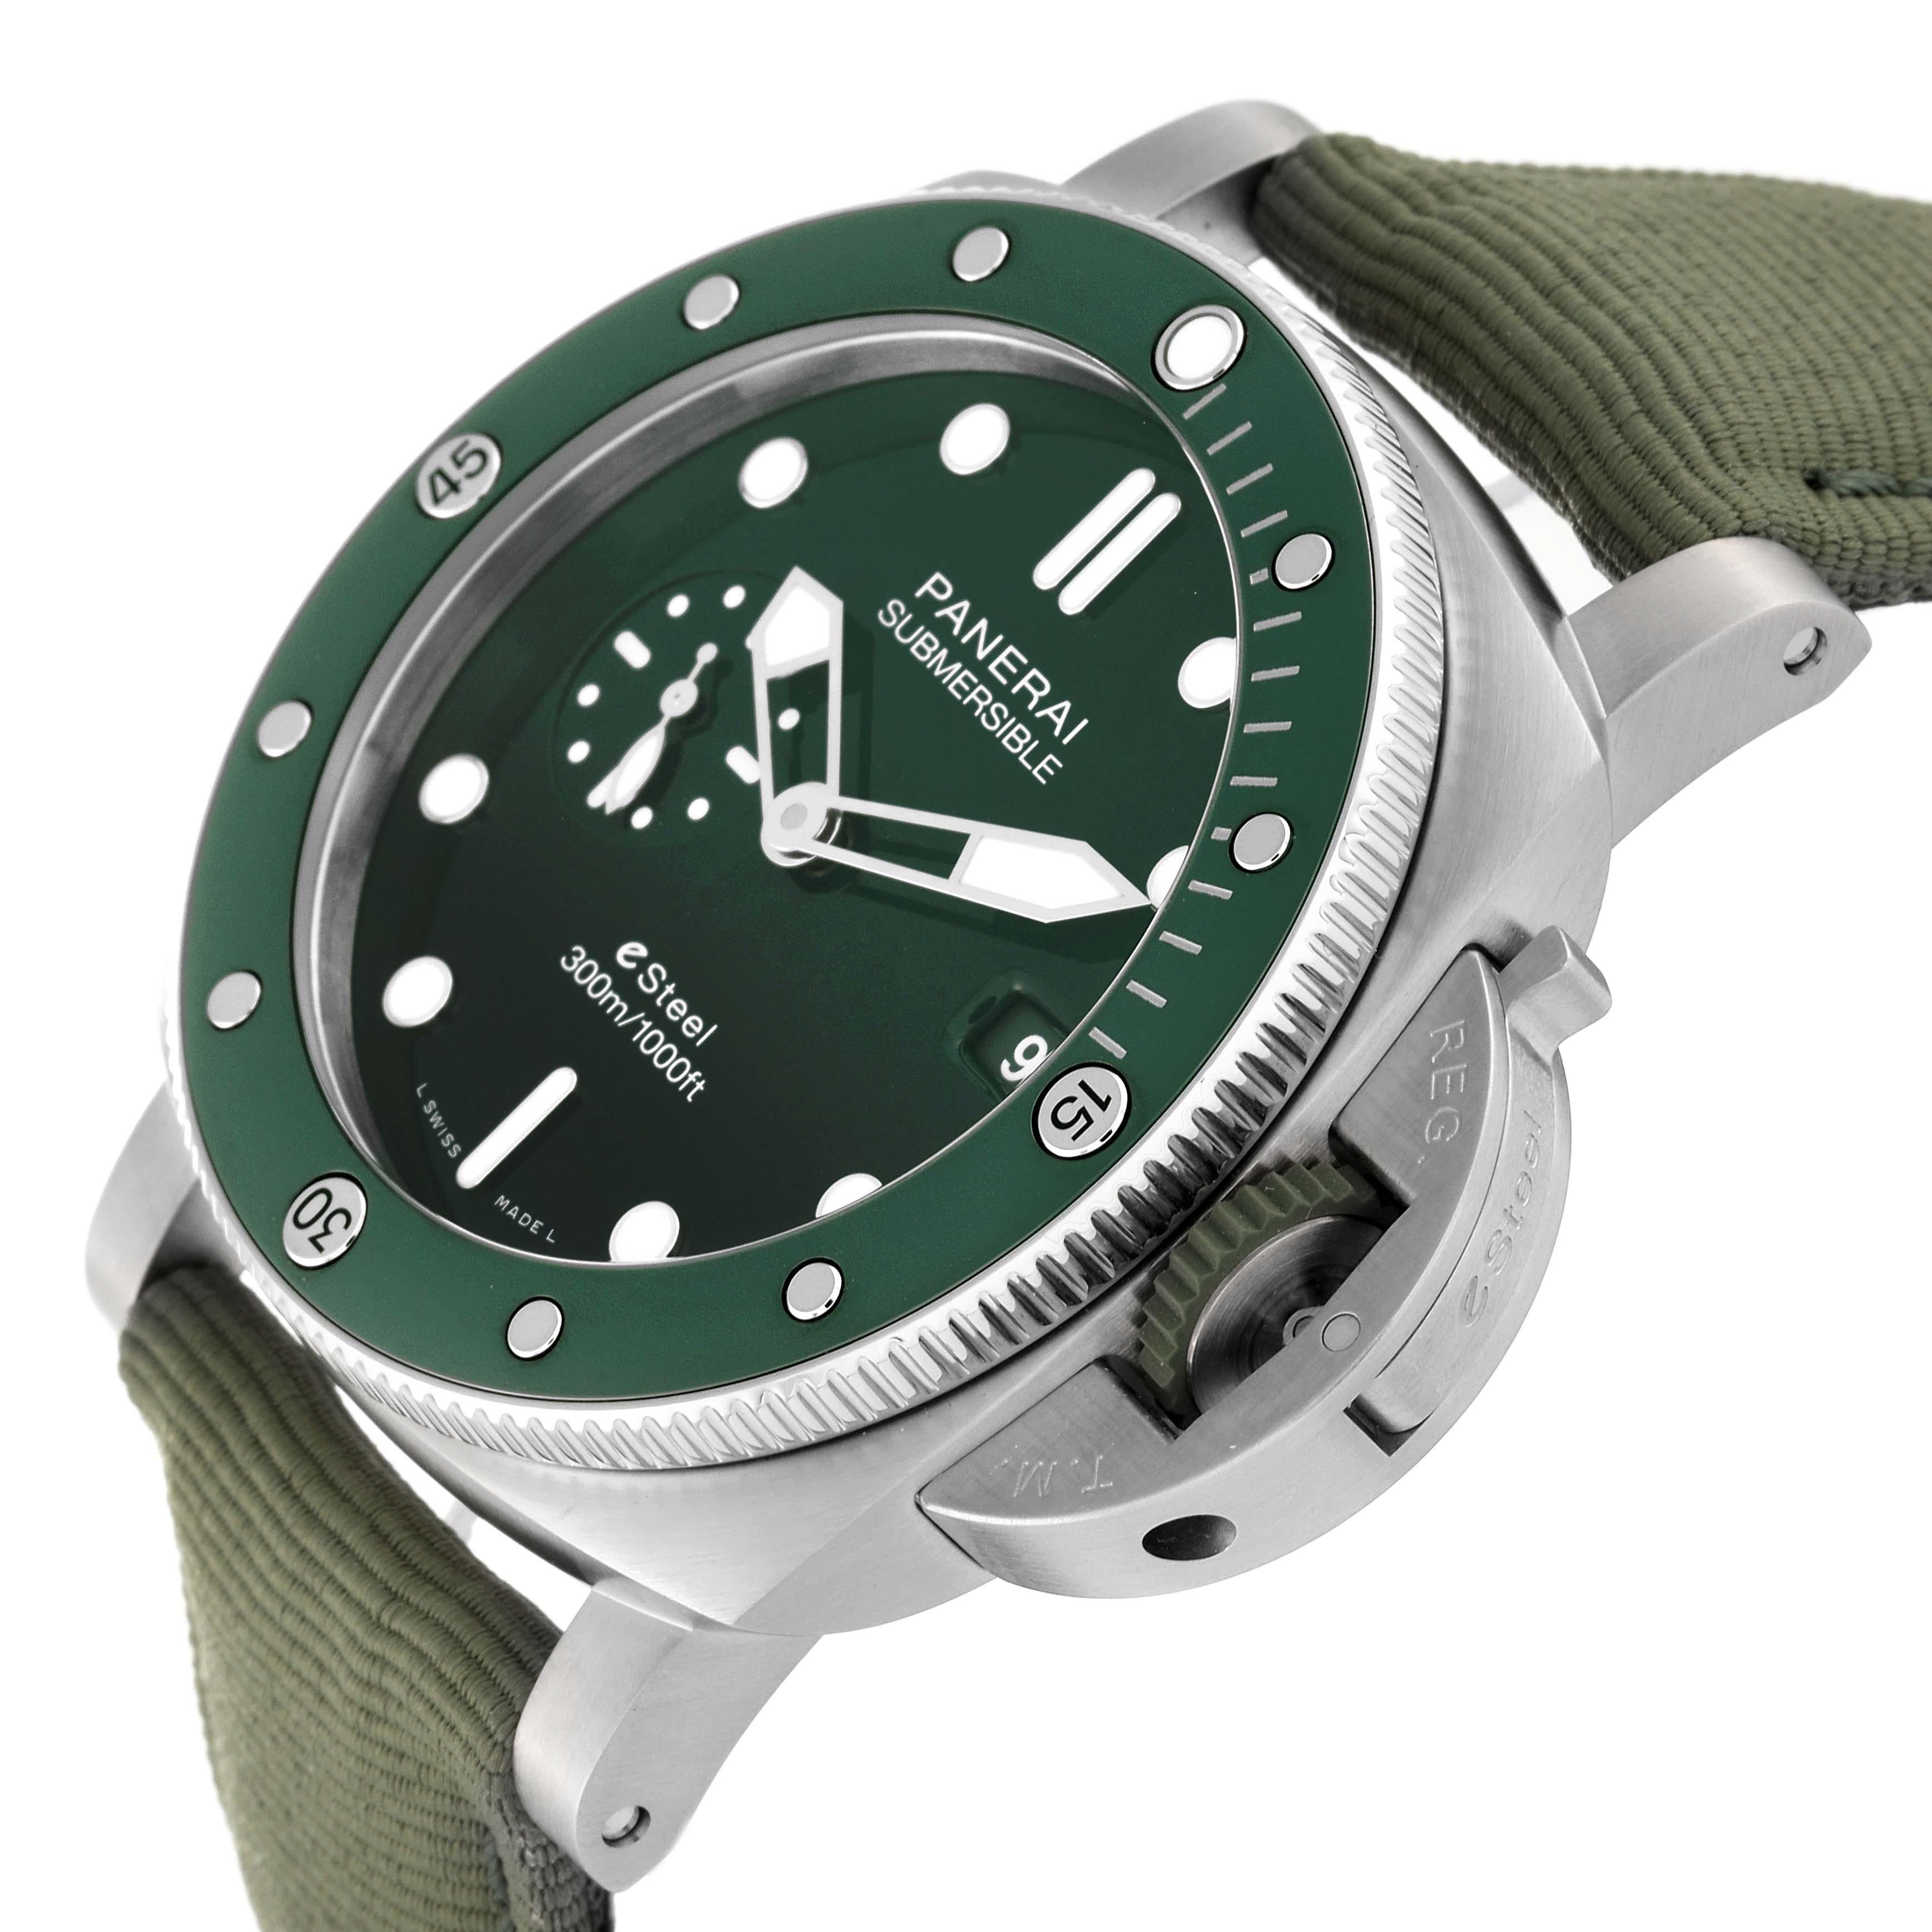 Panerai Submersible QuarantaQuattro Verde Smeraldo Steel Watch PAM01287 Unworn 1